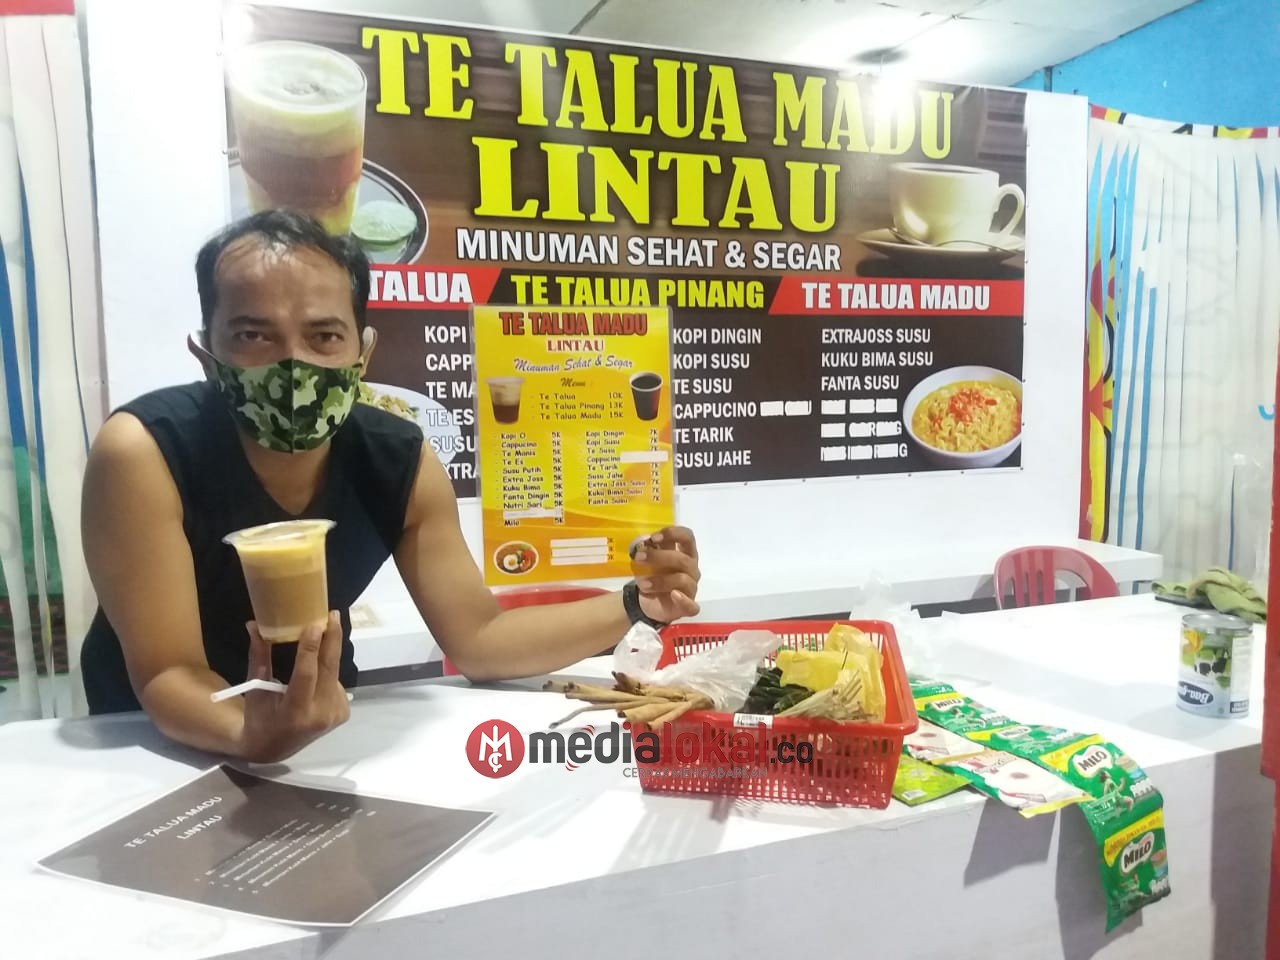 Hadir 'Te Talua Madu - Lintau' Minuman Ketahanan Tubuh Saat Pandemi Covid-19 di Pekanbaru